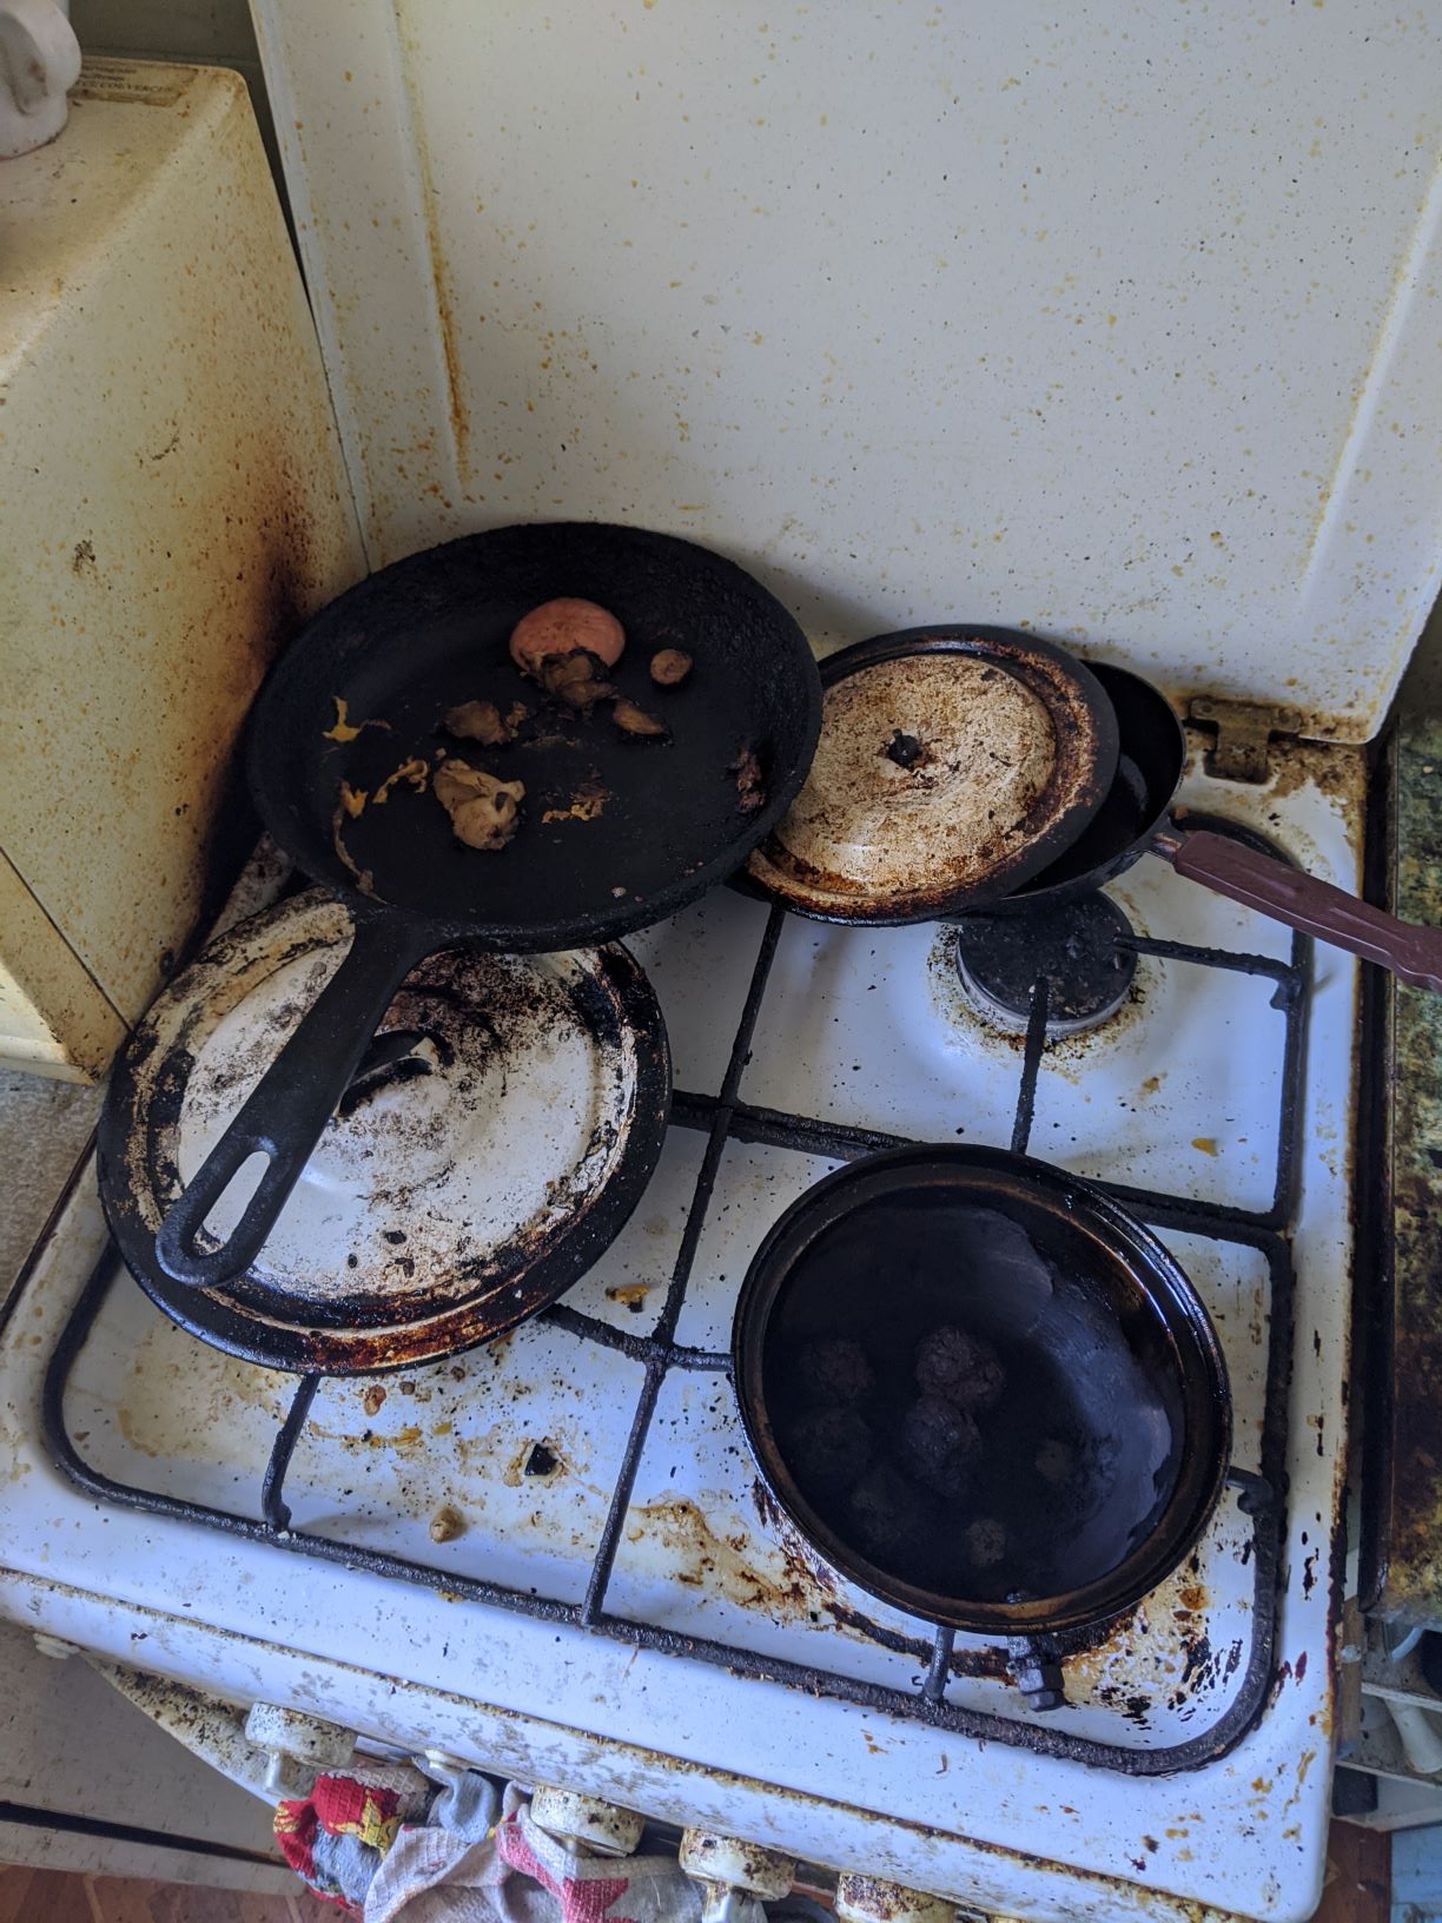 Сгоревшая еда на кухонной плите, из-за которой мог возникнуть пожар во всем доме.